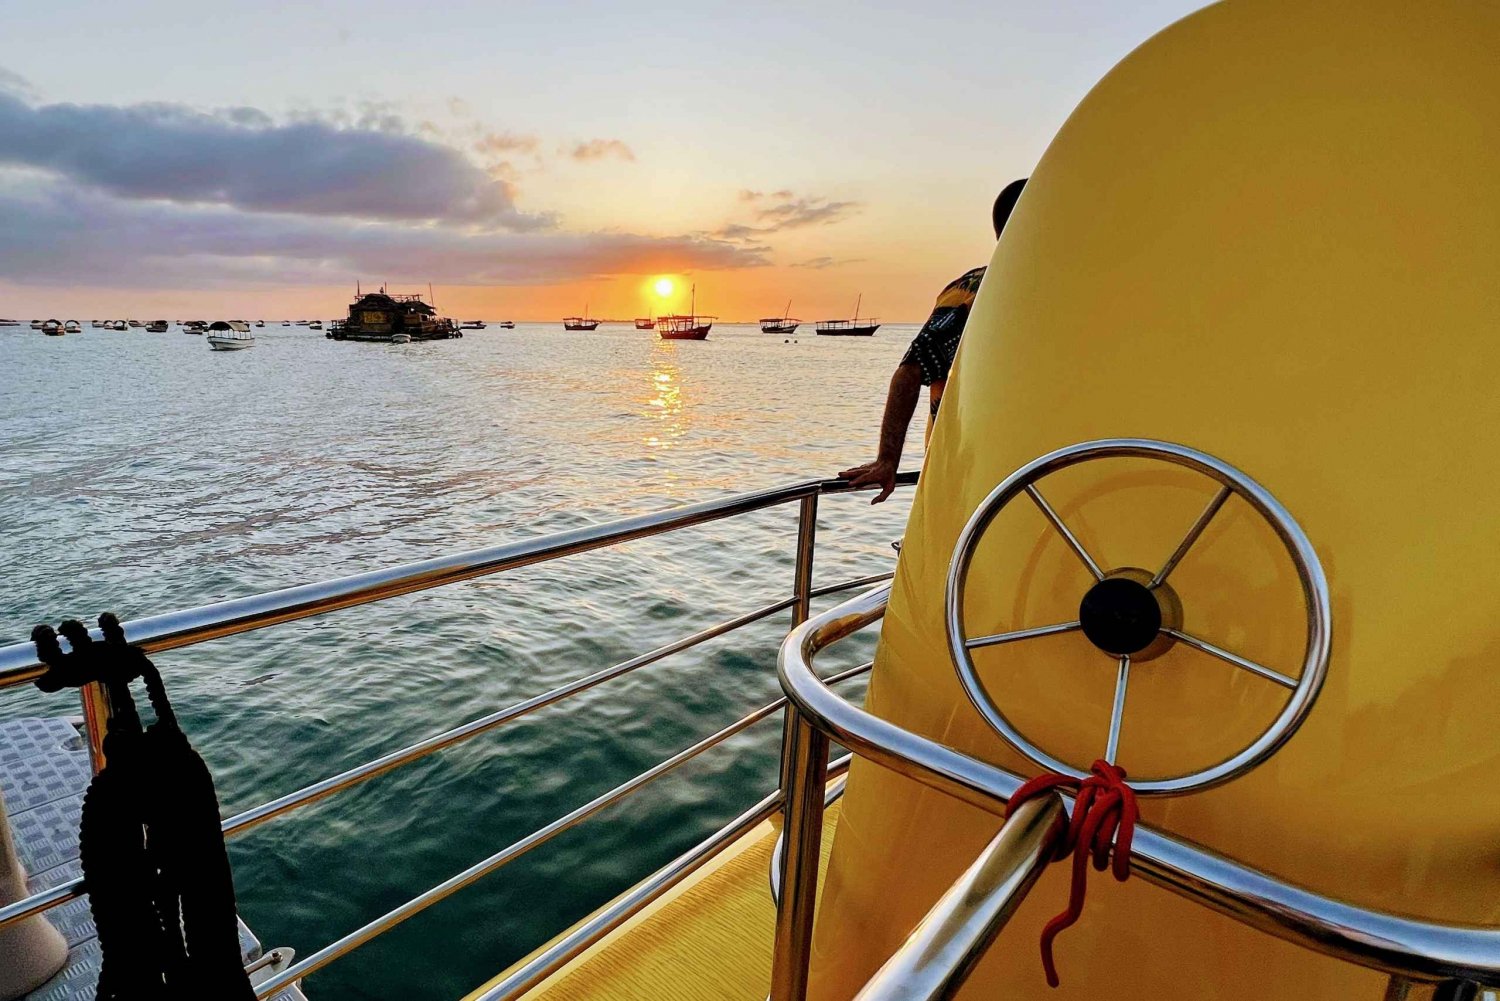 Zanzibar Submarine Adventure: Sunset Cruise Tour